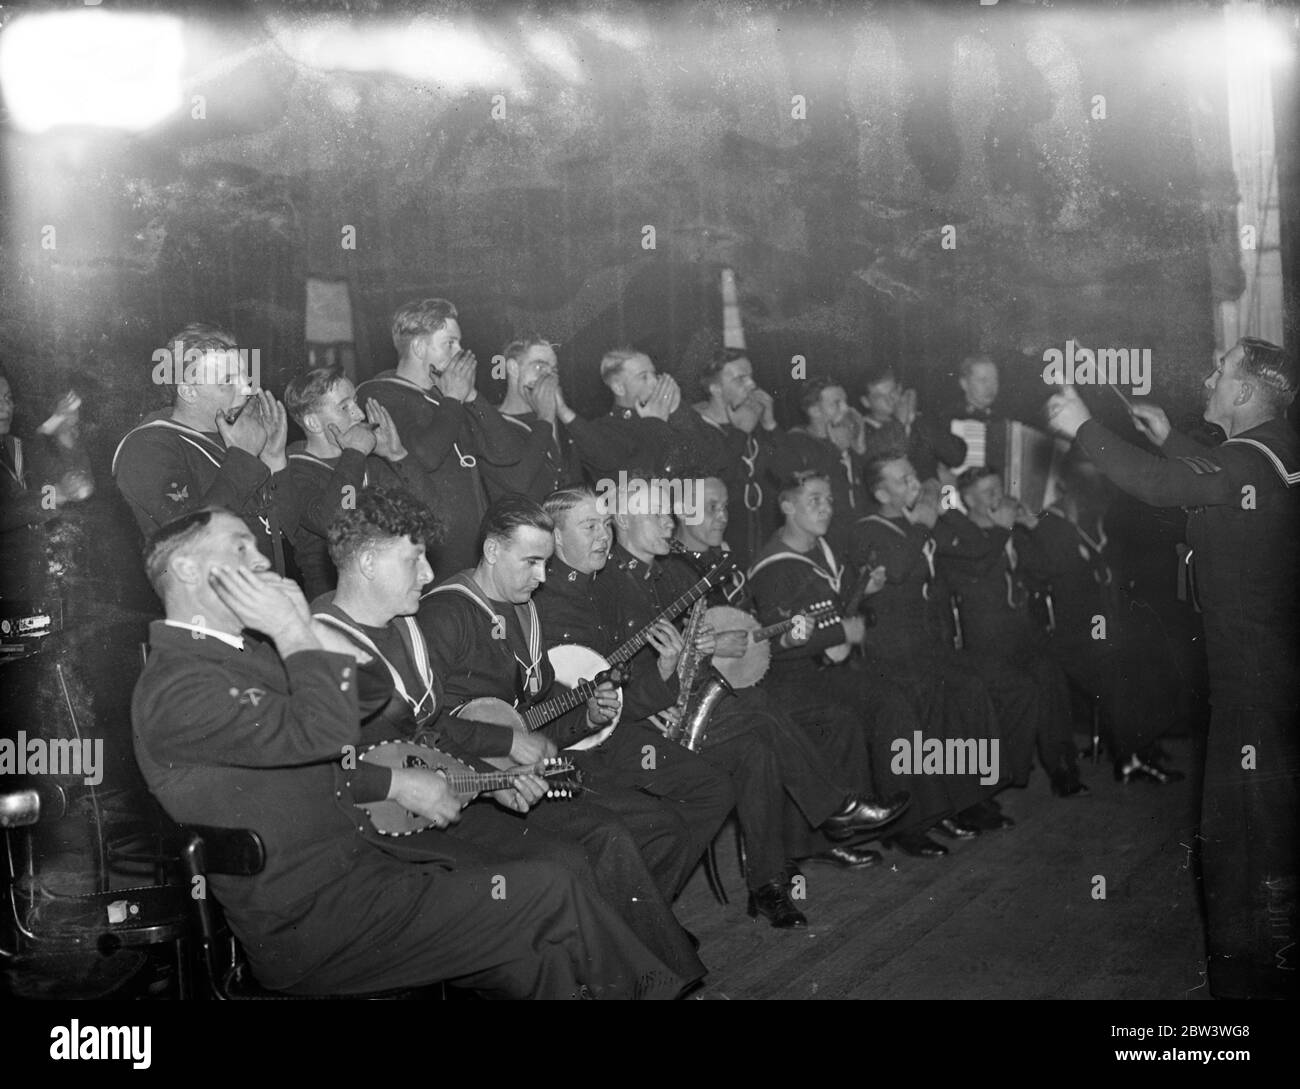 H M S Rodney ' s Mundharmonika-Band spielen in London, um Wohltätigkeit zu unterstützen. Die Offiziere und Ratings von HS Rodney haben eine Mundharmonika-Band und eine Konzertparty gegründet, um Wohltätigkeitsorganisationen zu helfen. Sie demonstrierten ihr Vorzeichen bei einer Aufführung zur Unterstützung der Selbsthilfe-Mission der Kinder im Rathaus von Battersea. 27. November 1935 Stockfoto